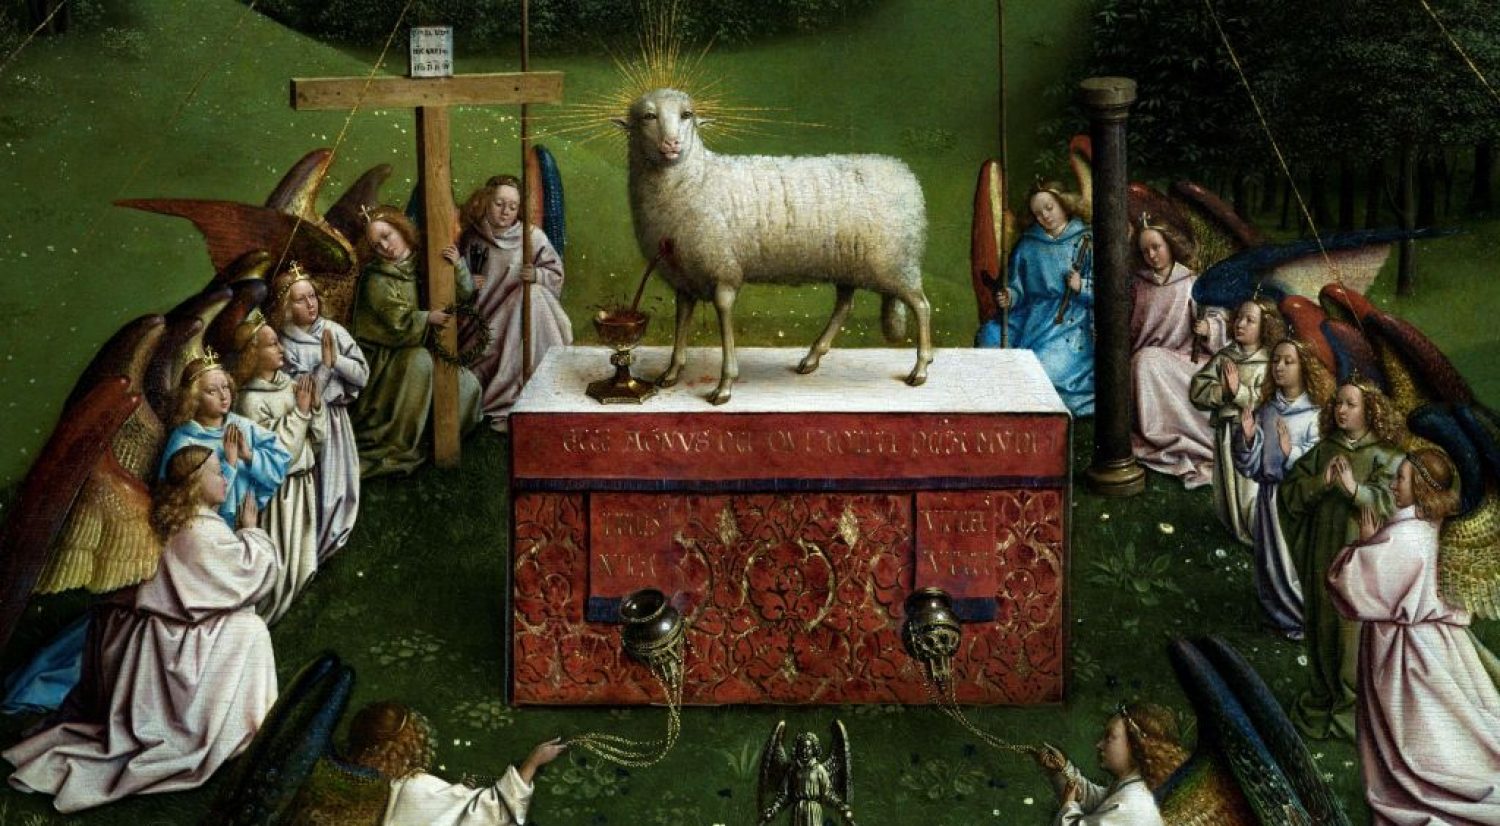 historic sheep and lamb